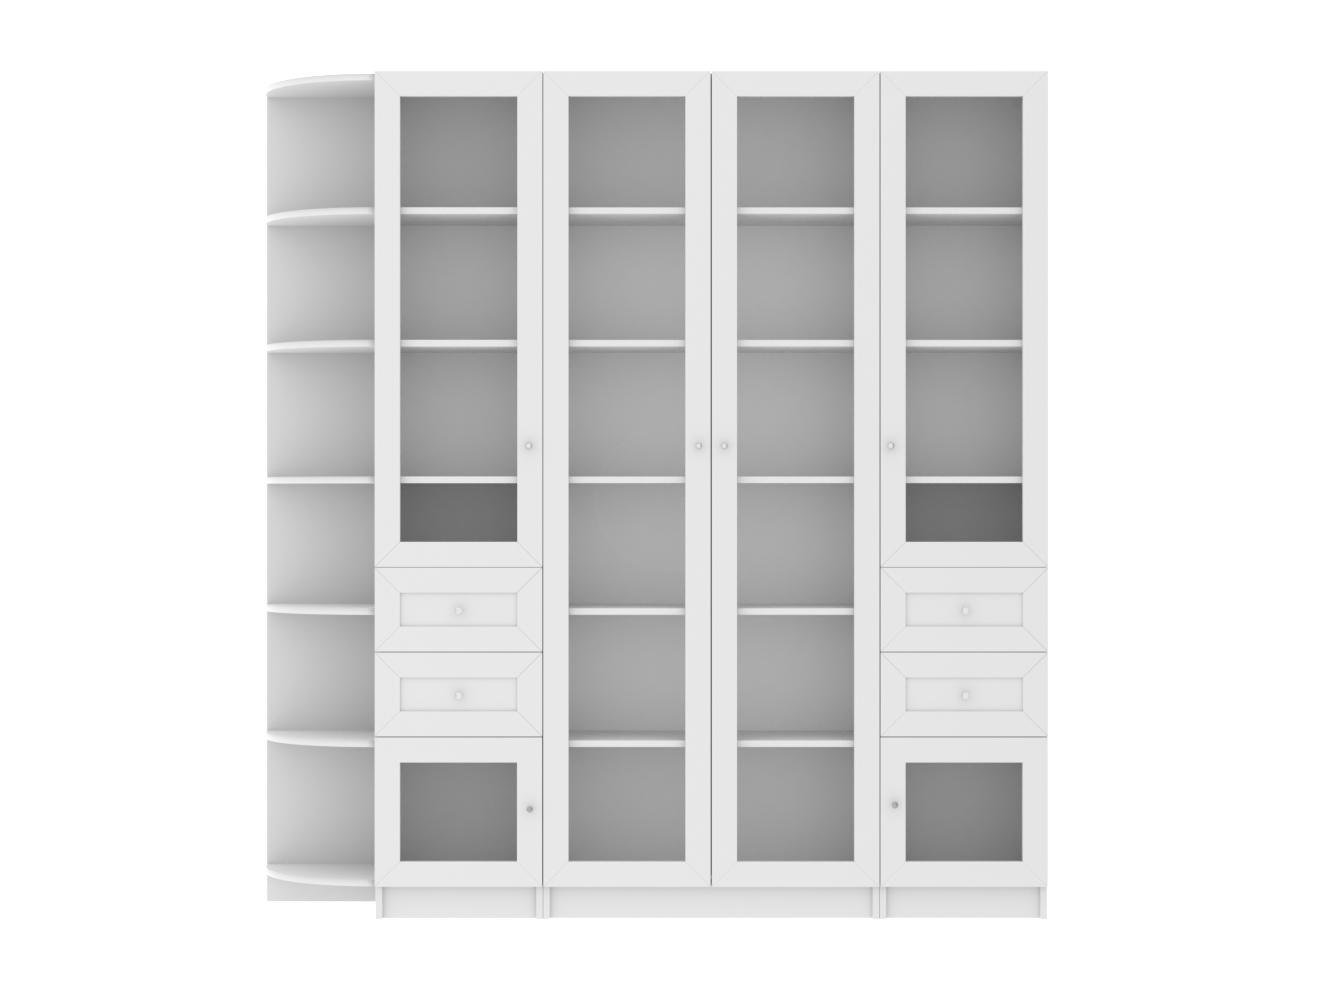 Изображение товара Книжный шкаф Билли 50 white ИКЕА (IKEA), 190x30x202 см на сайте adeta.ru